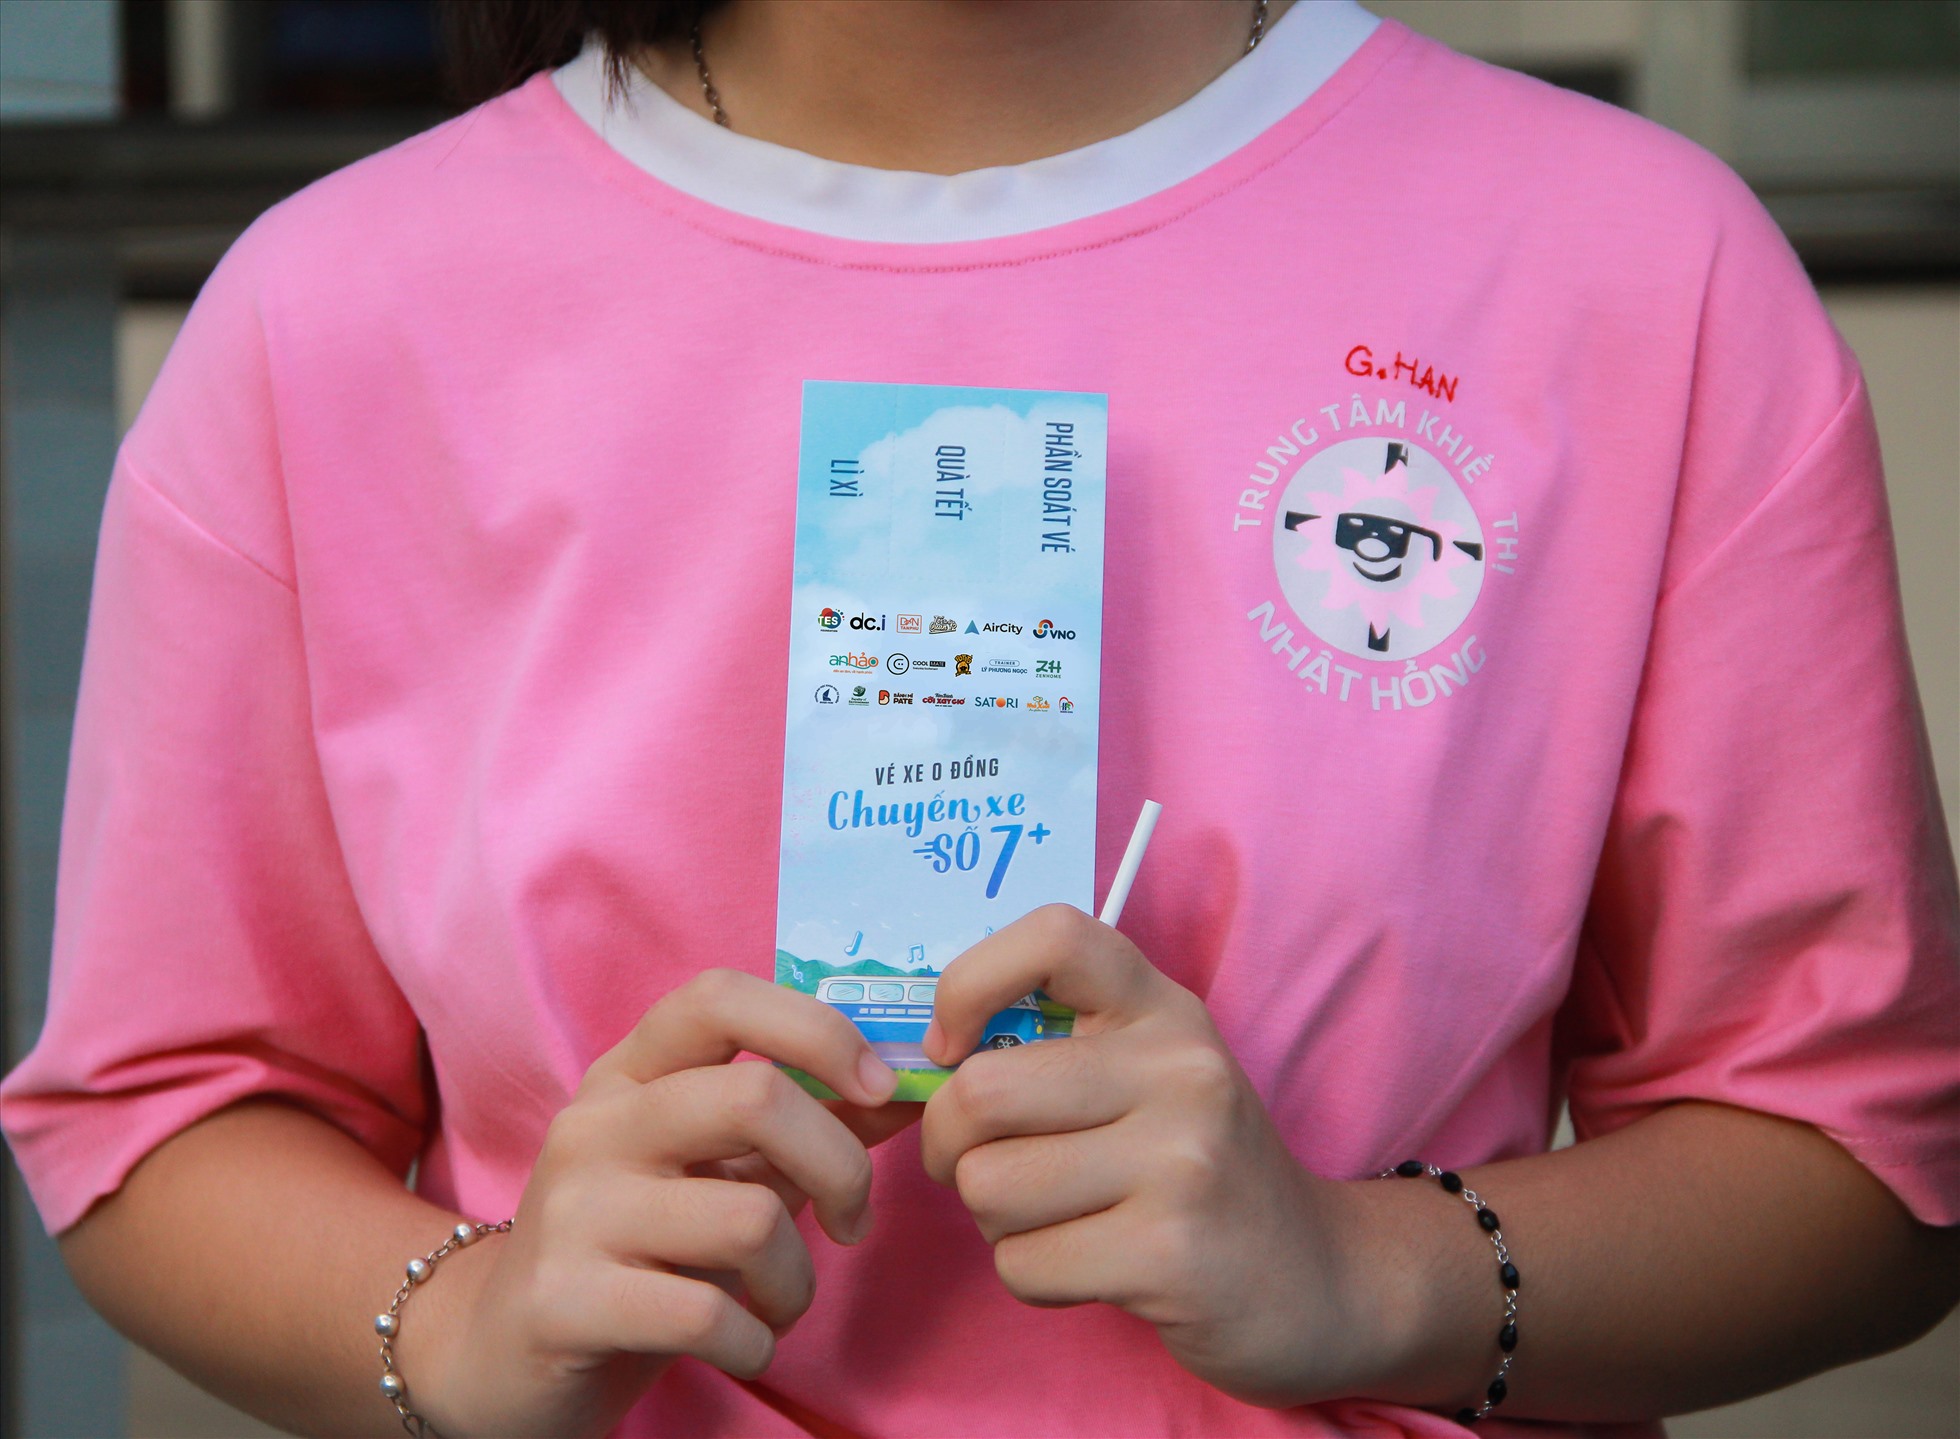 Trao tặng vé xe 0 đồng cho học sinh khiếm thị tại Trung tâm Nhật Hồng